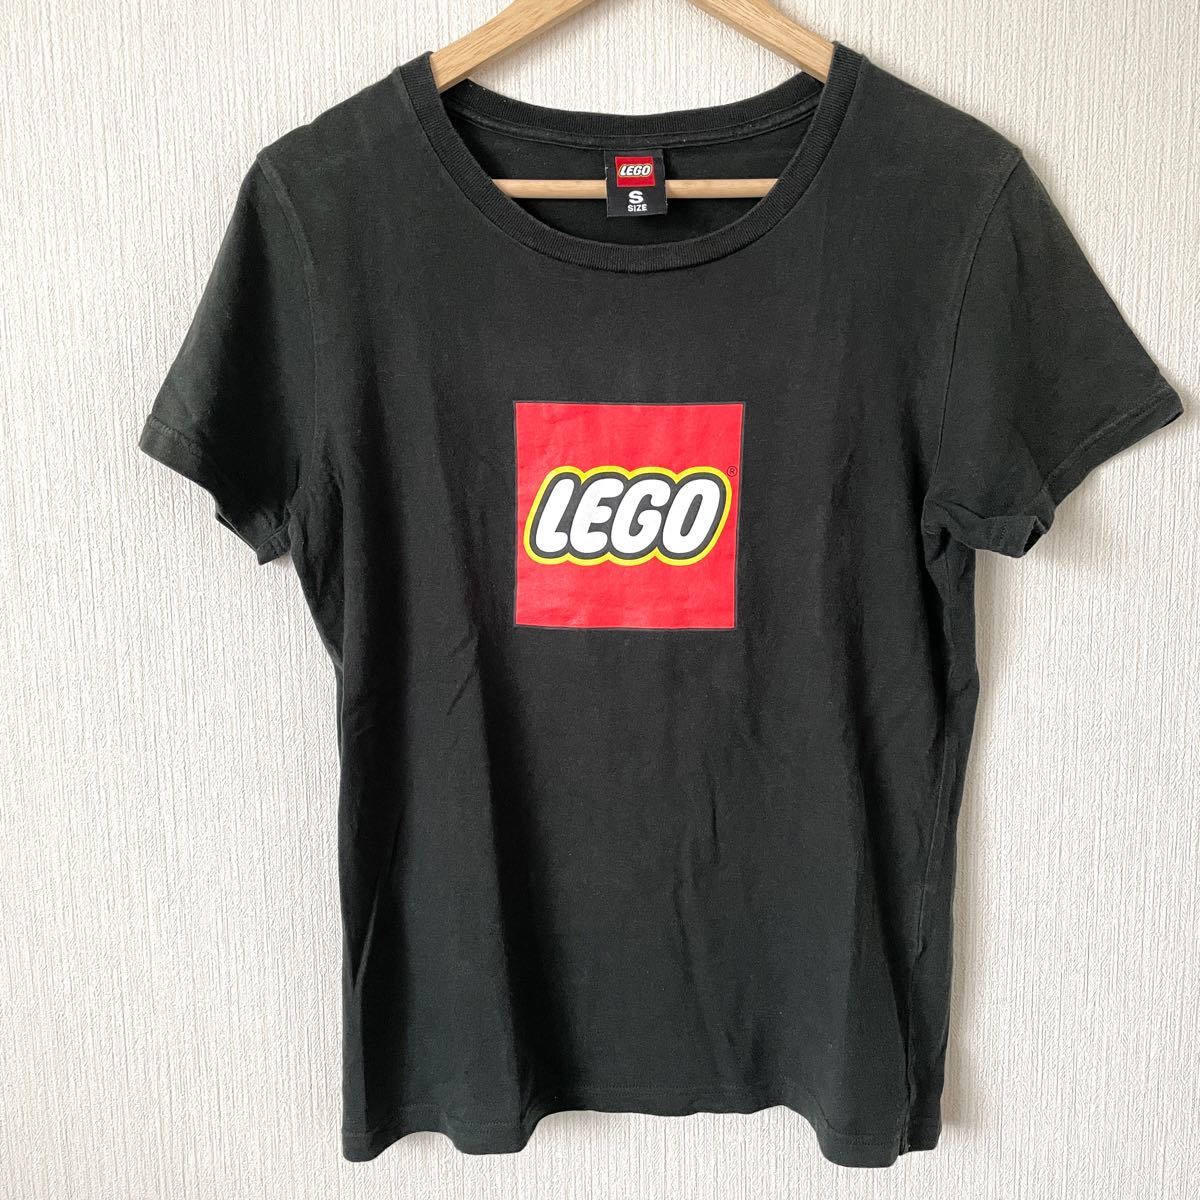 LEGO レゴ プリントTシャツ 半袖Tシャツ ブロック 企業物 カジュアル 普段着 ブラック 黒 S